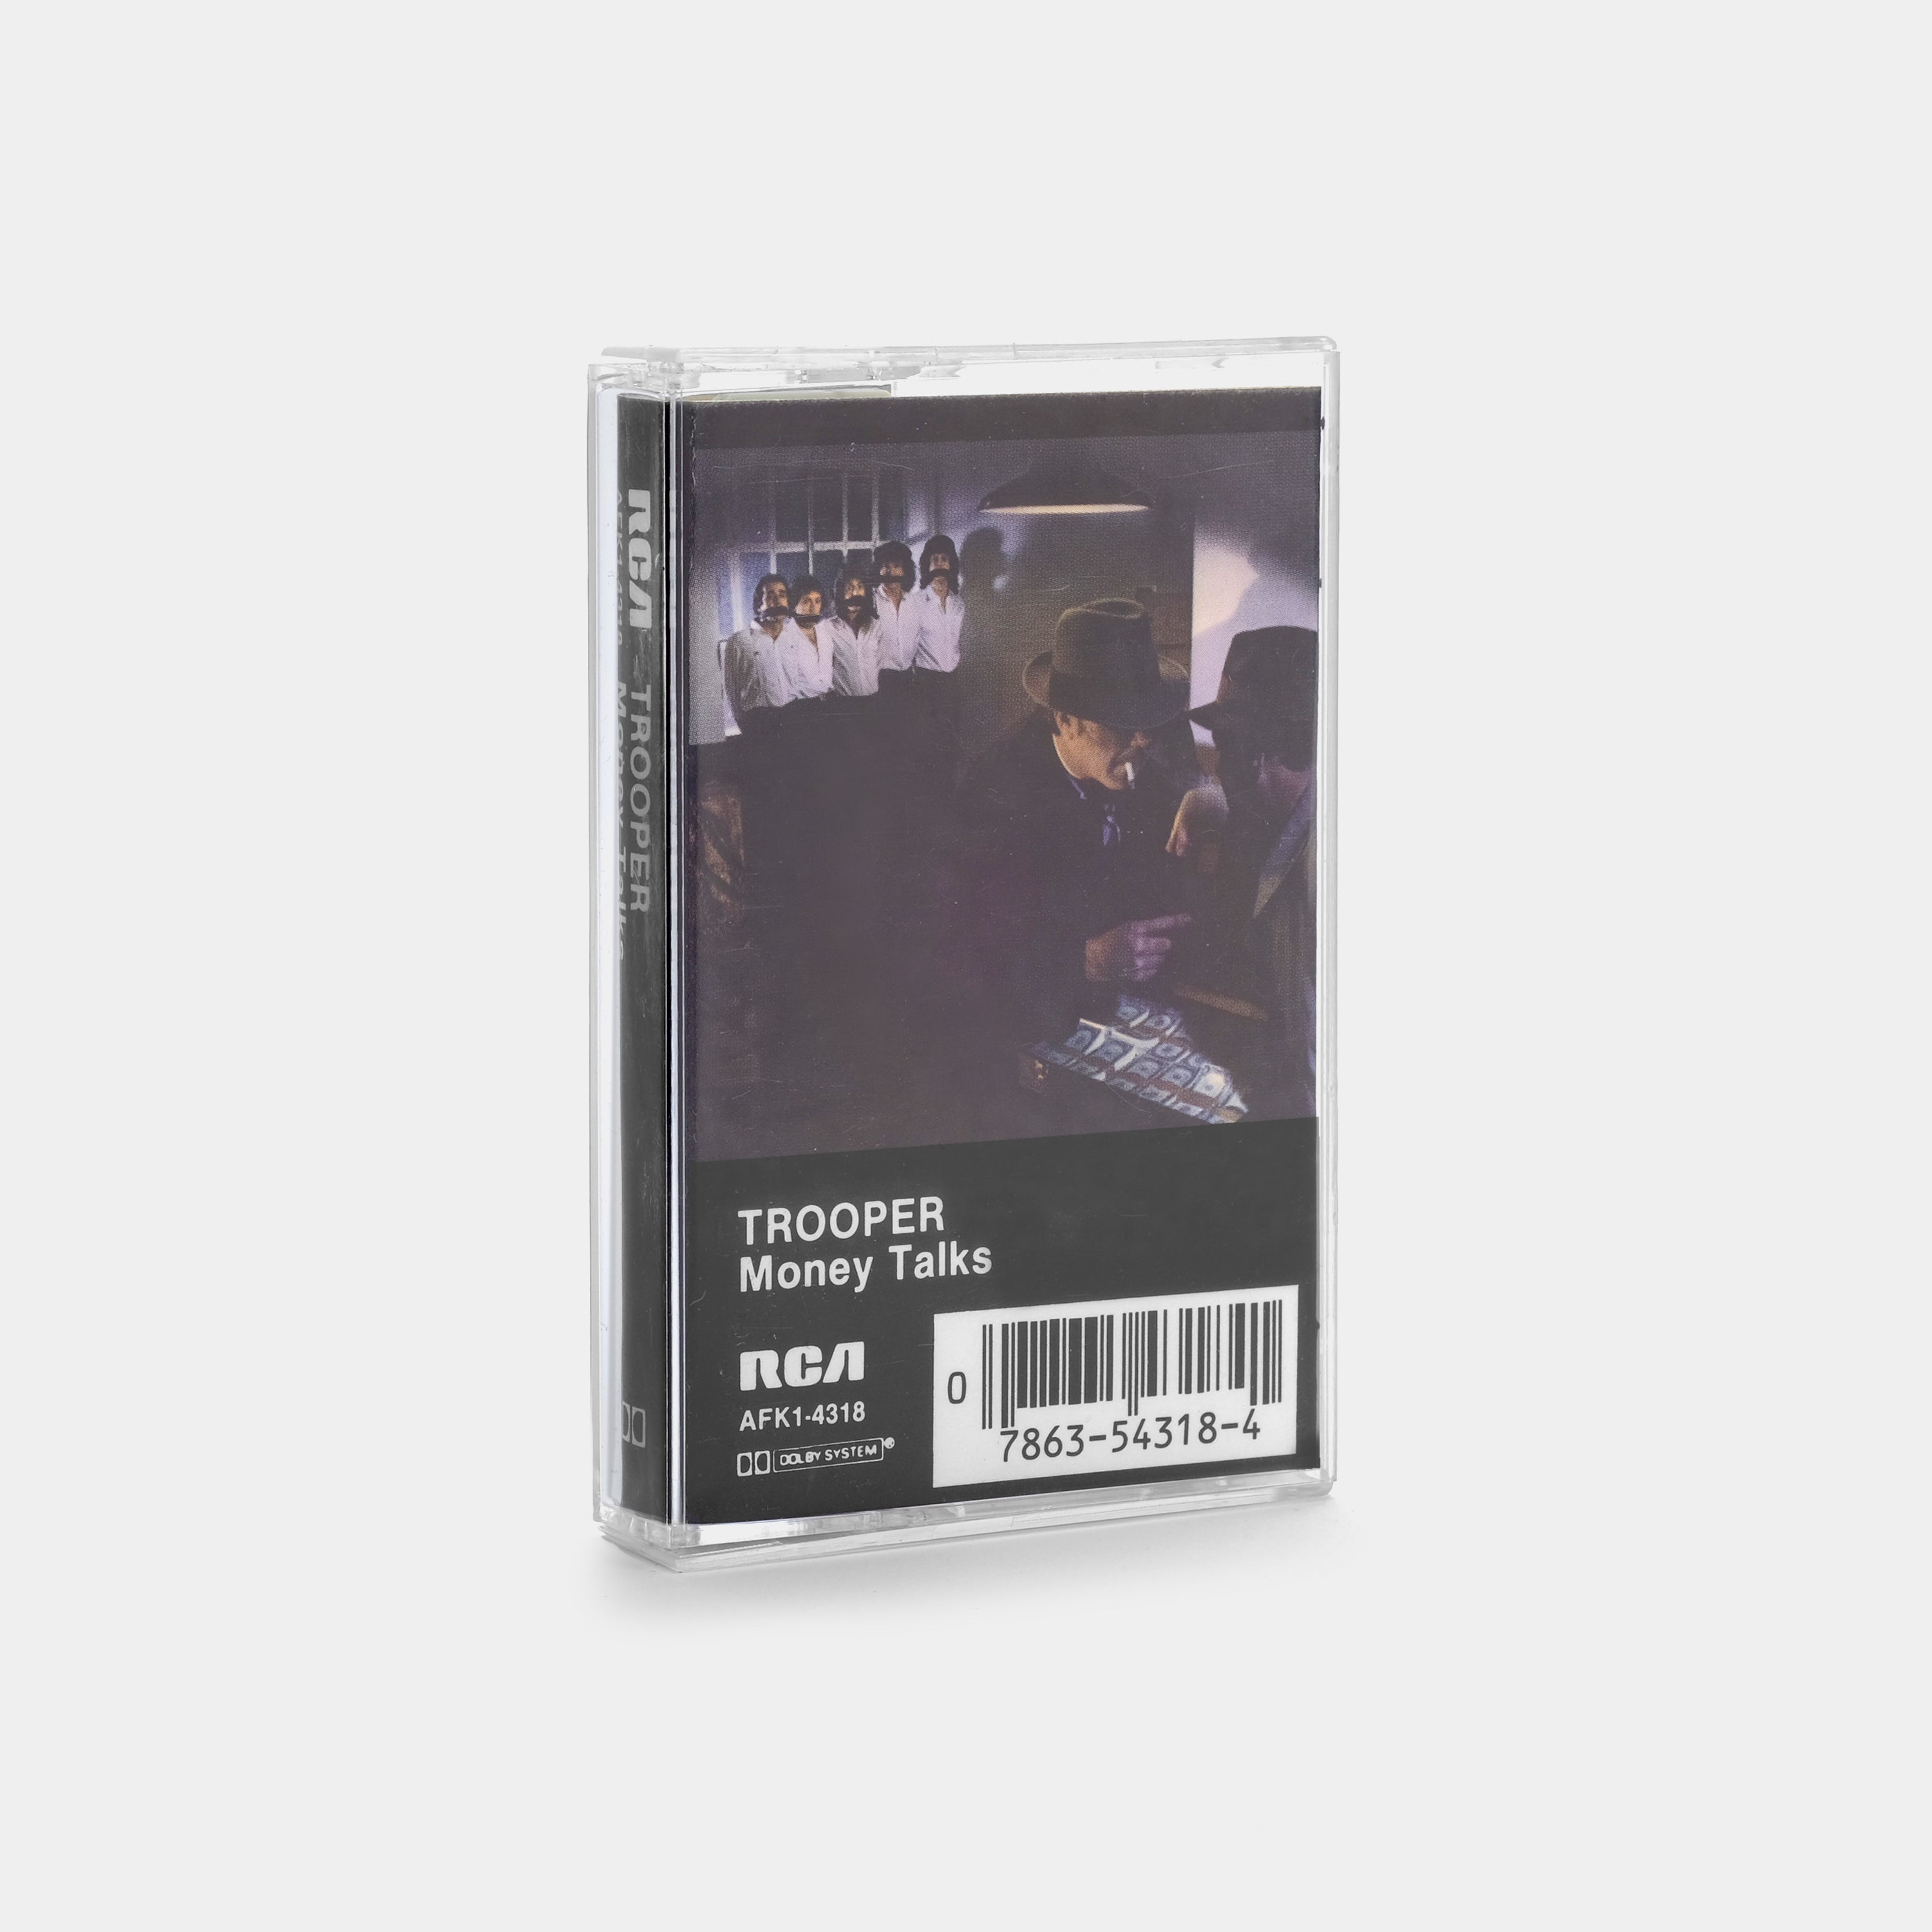 Trooper - Money Talks Cassette Tape